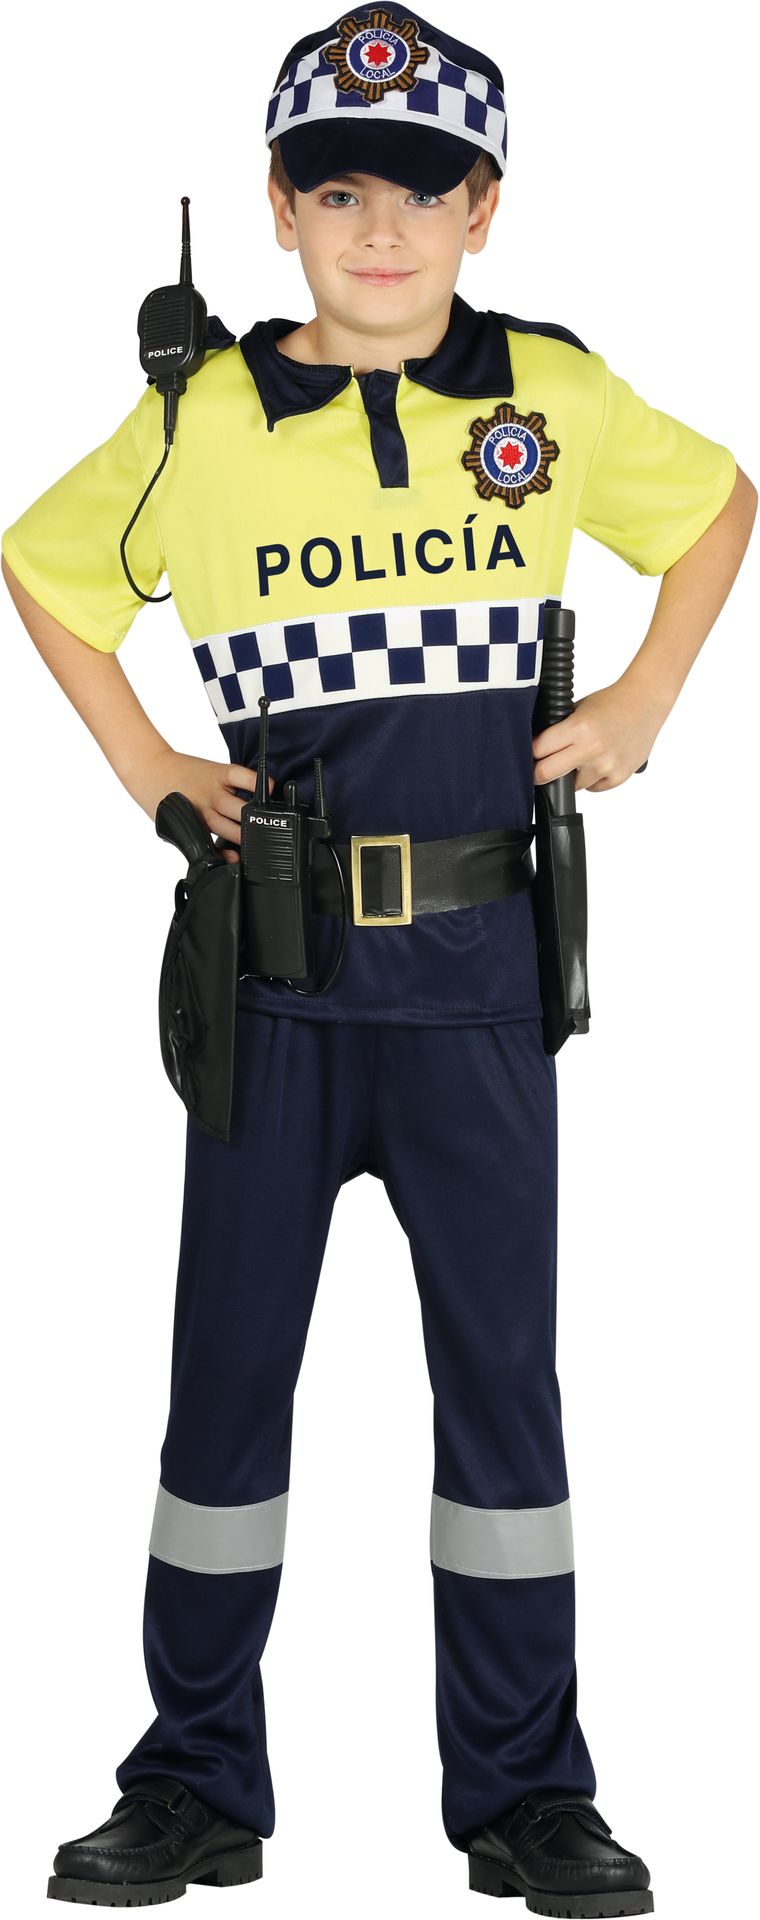 graan residentie zondag Stoere politie kostuum kind | Feestkleding.nl